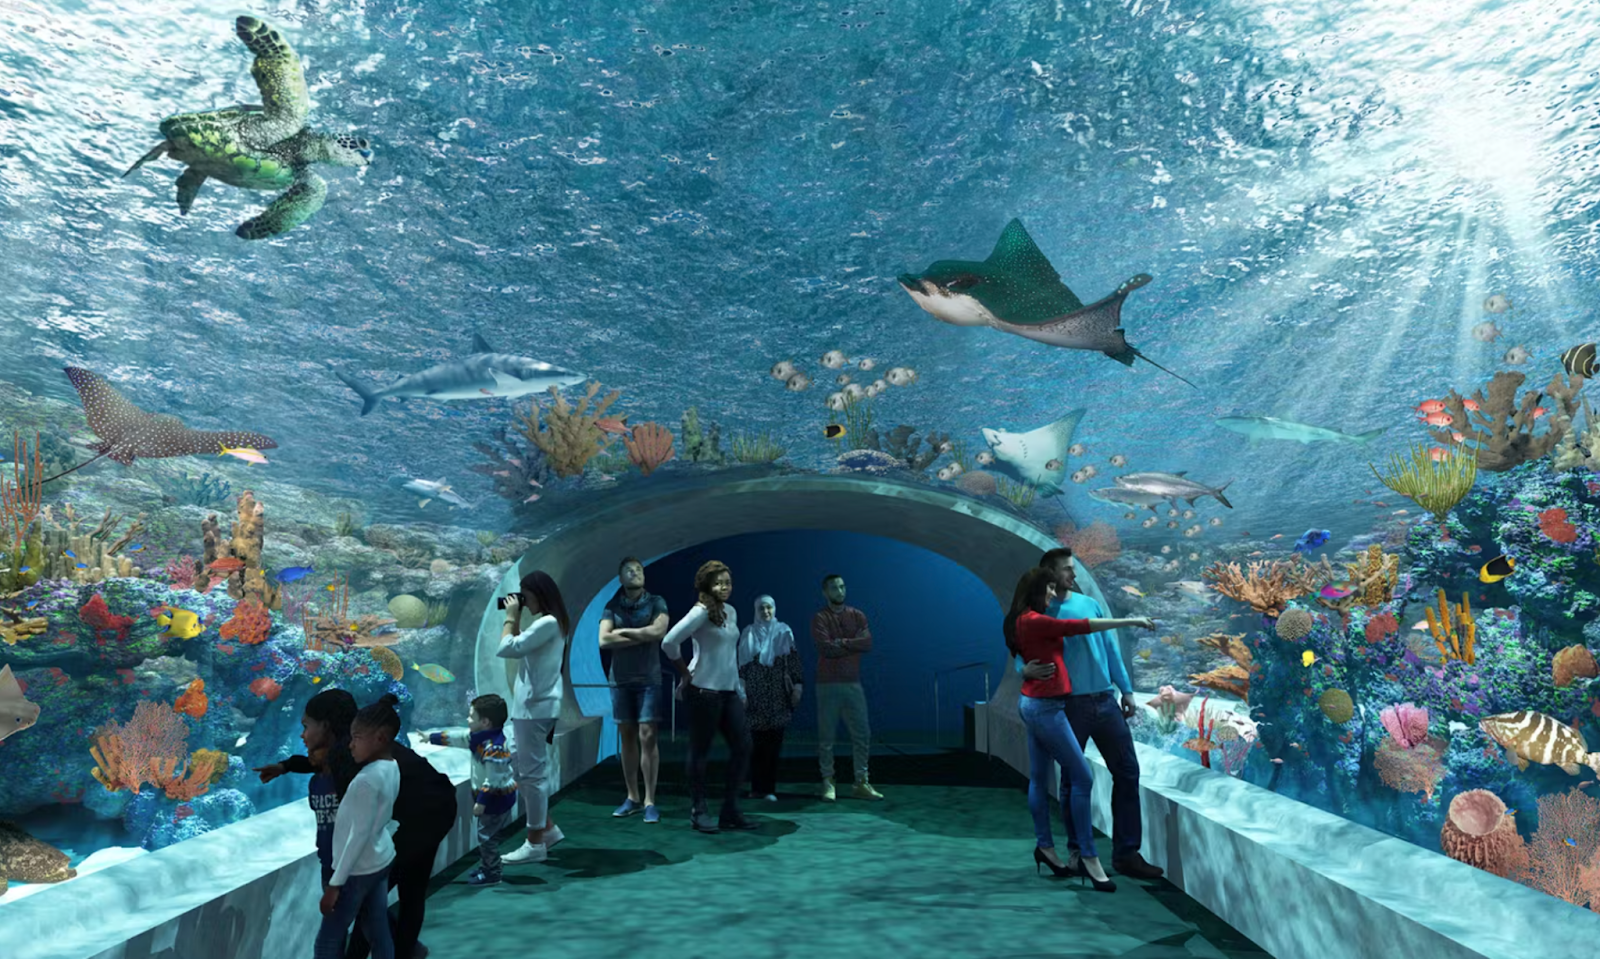 gift ideas for kids (not toys): Aquarium passes